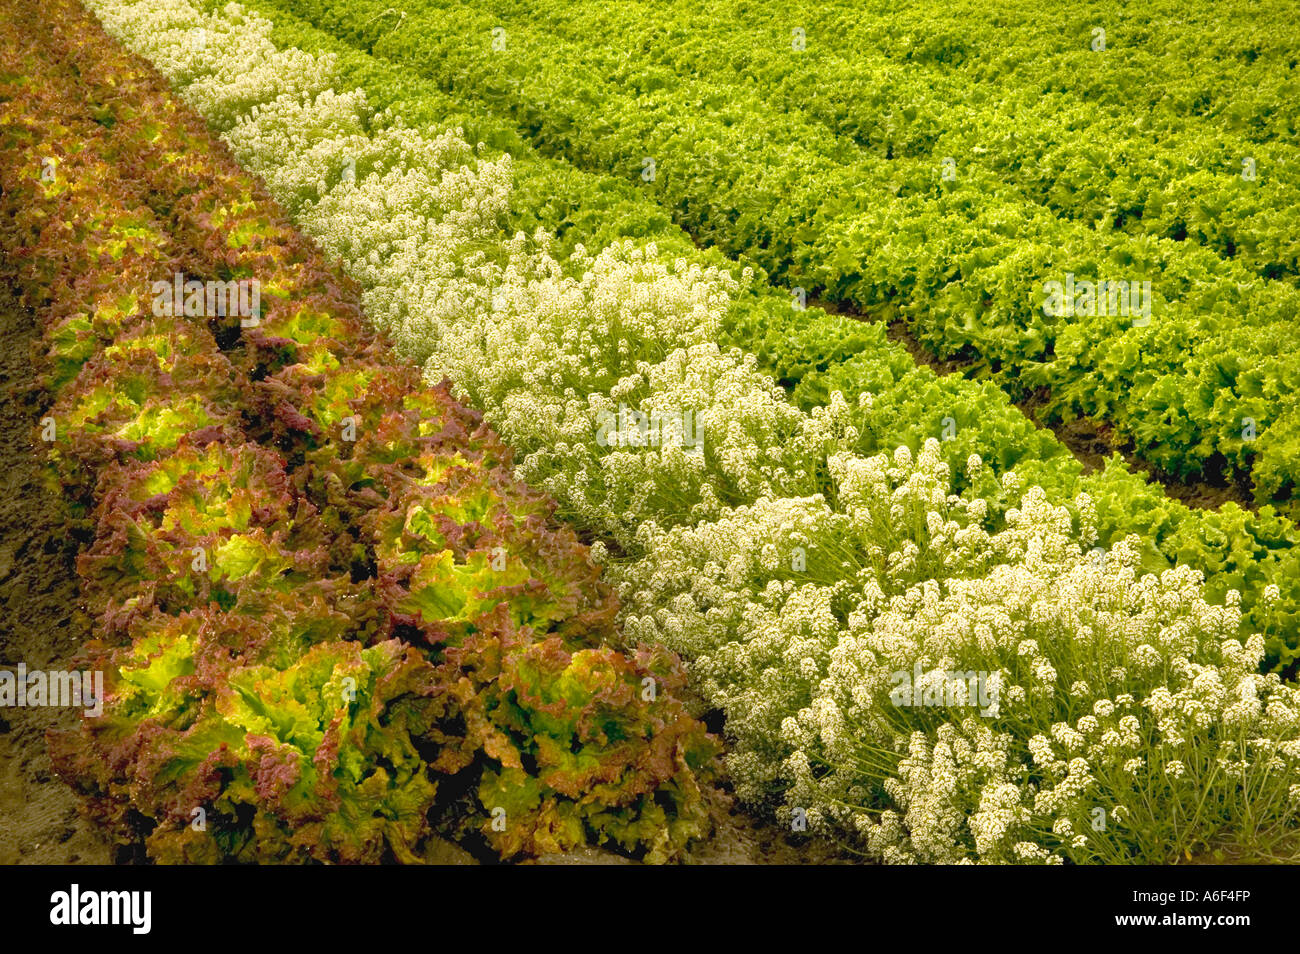 Laitue romaine 'organique' growing in field, Alyssum planté pour contrôler les pucerons, en Californie Banque D'Images